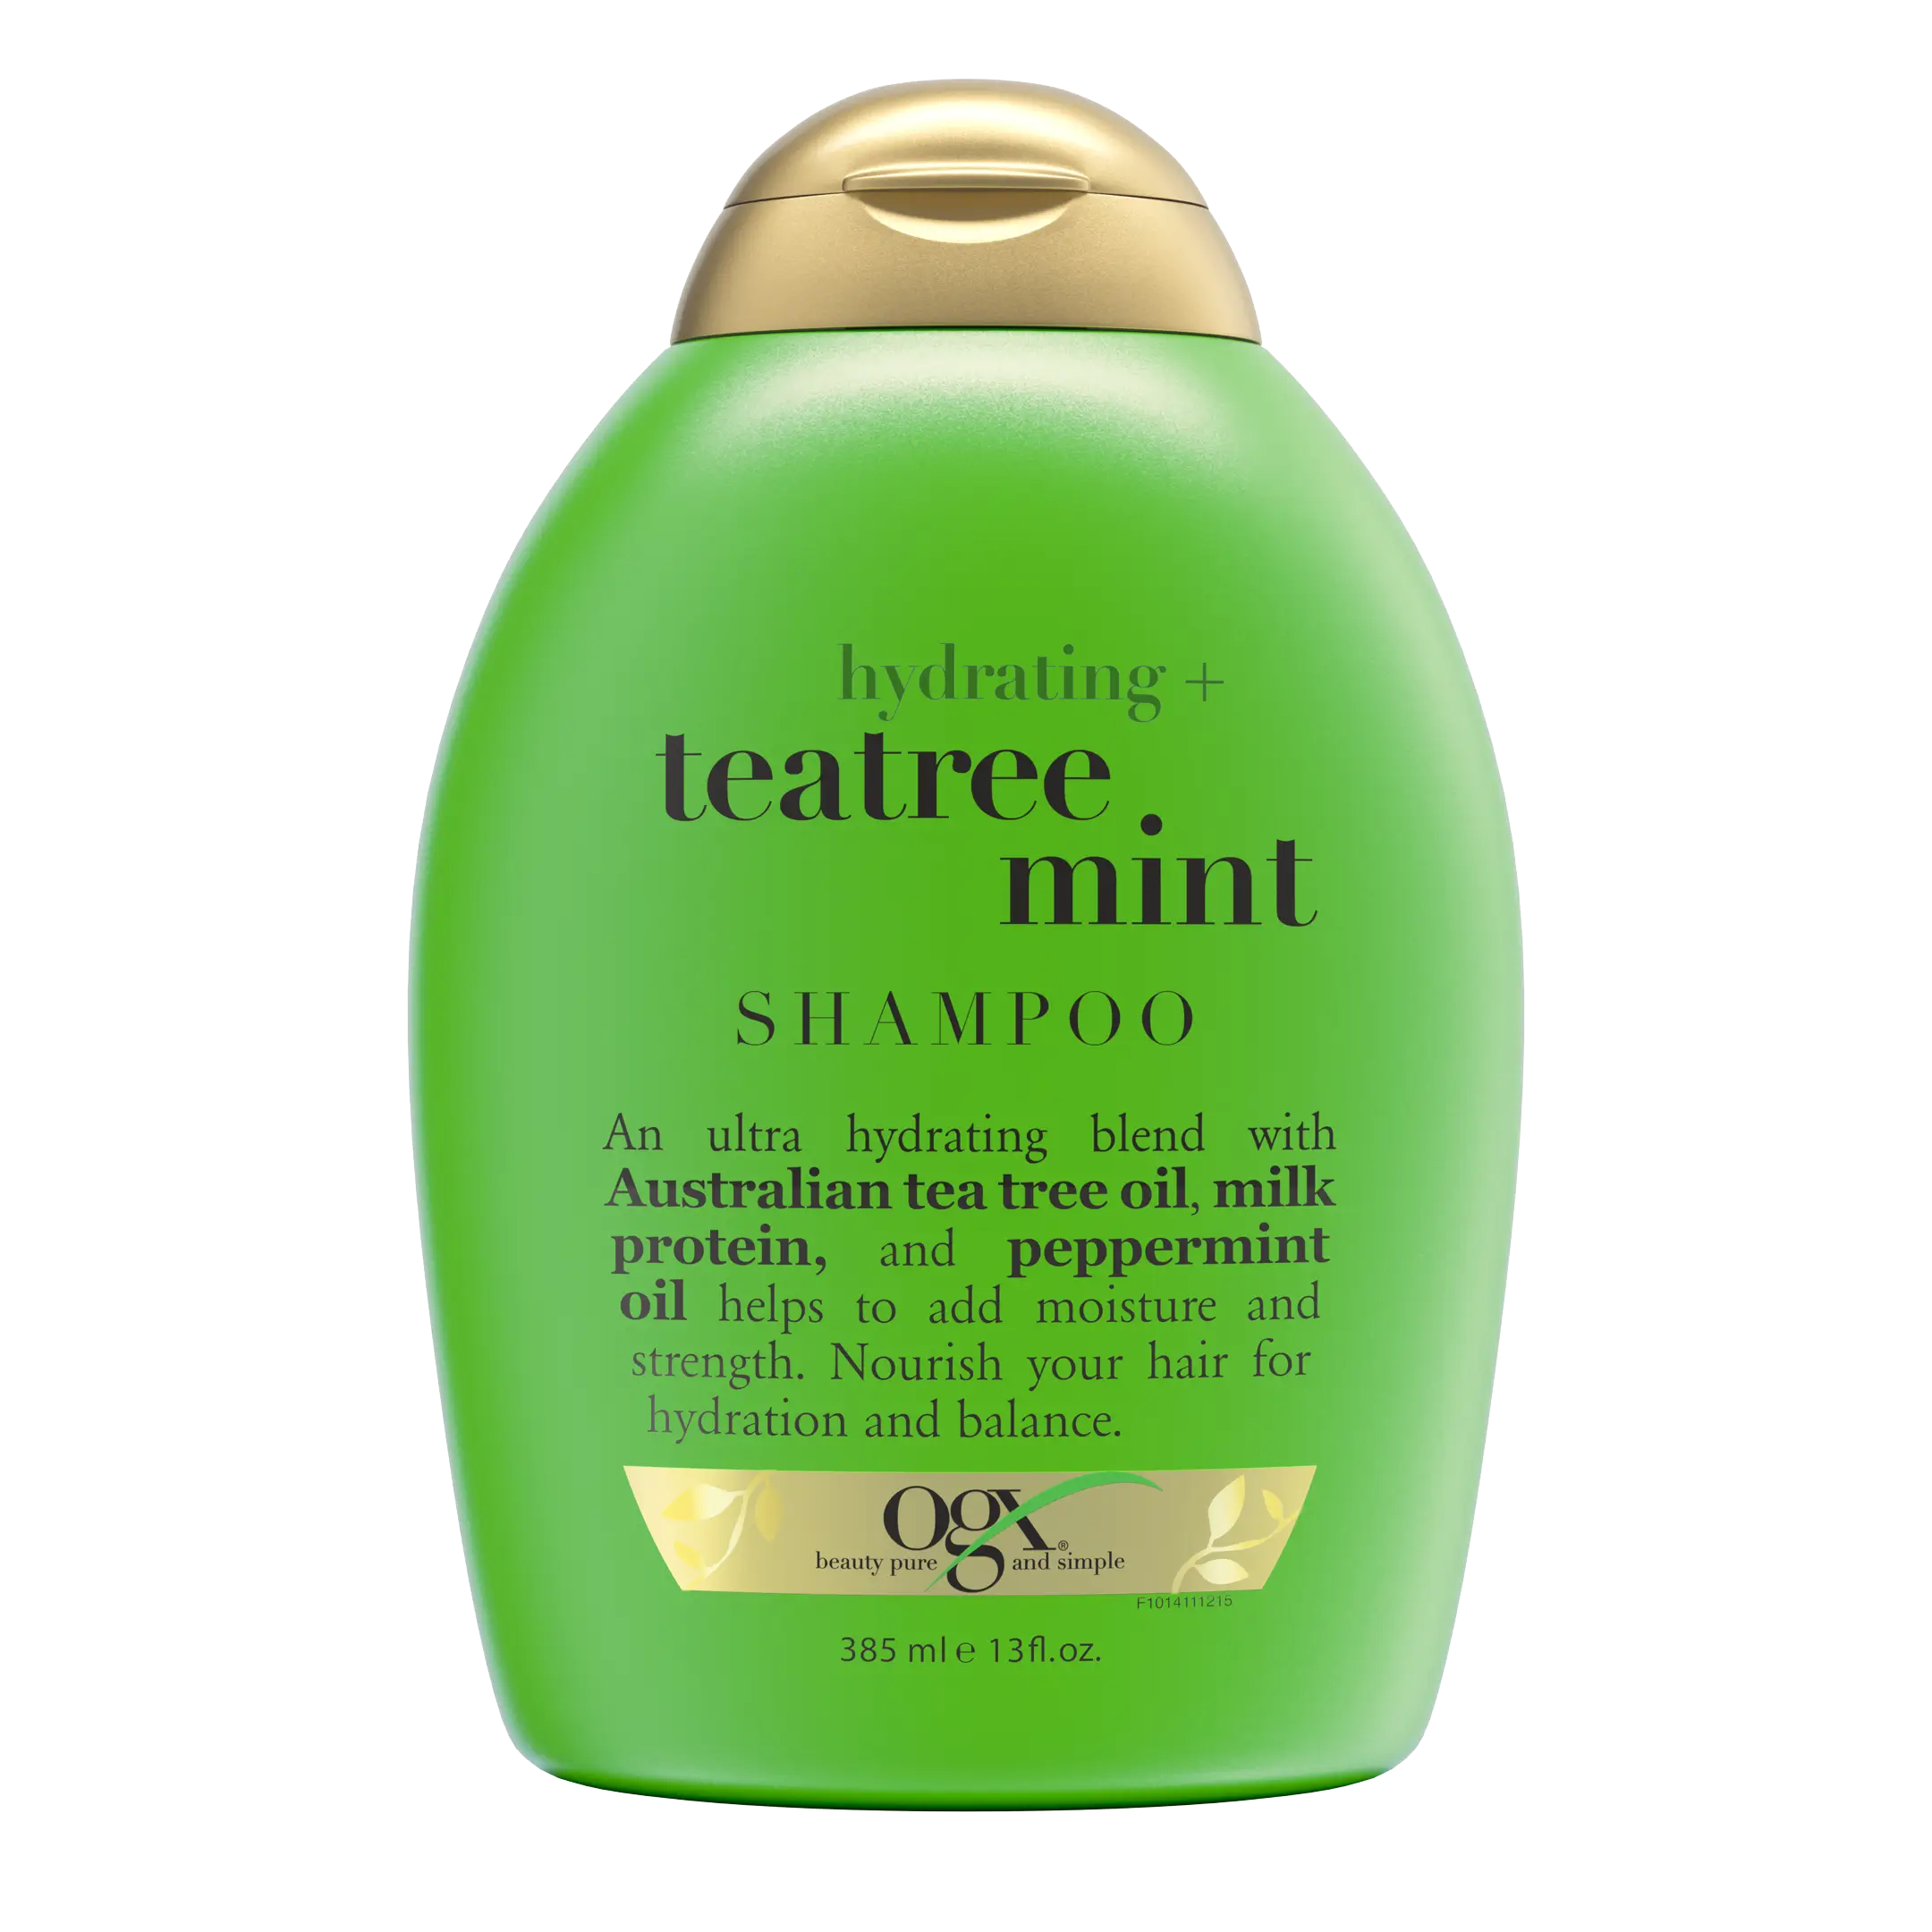 Hydrating + Teatree Mint Shampoo 13 fl oz 2